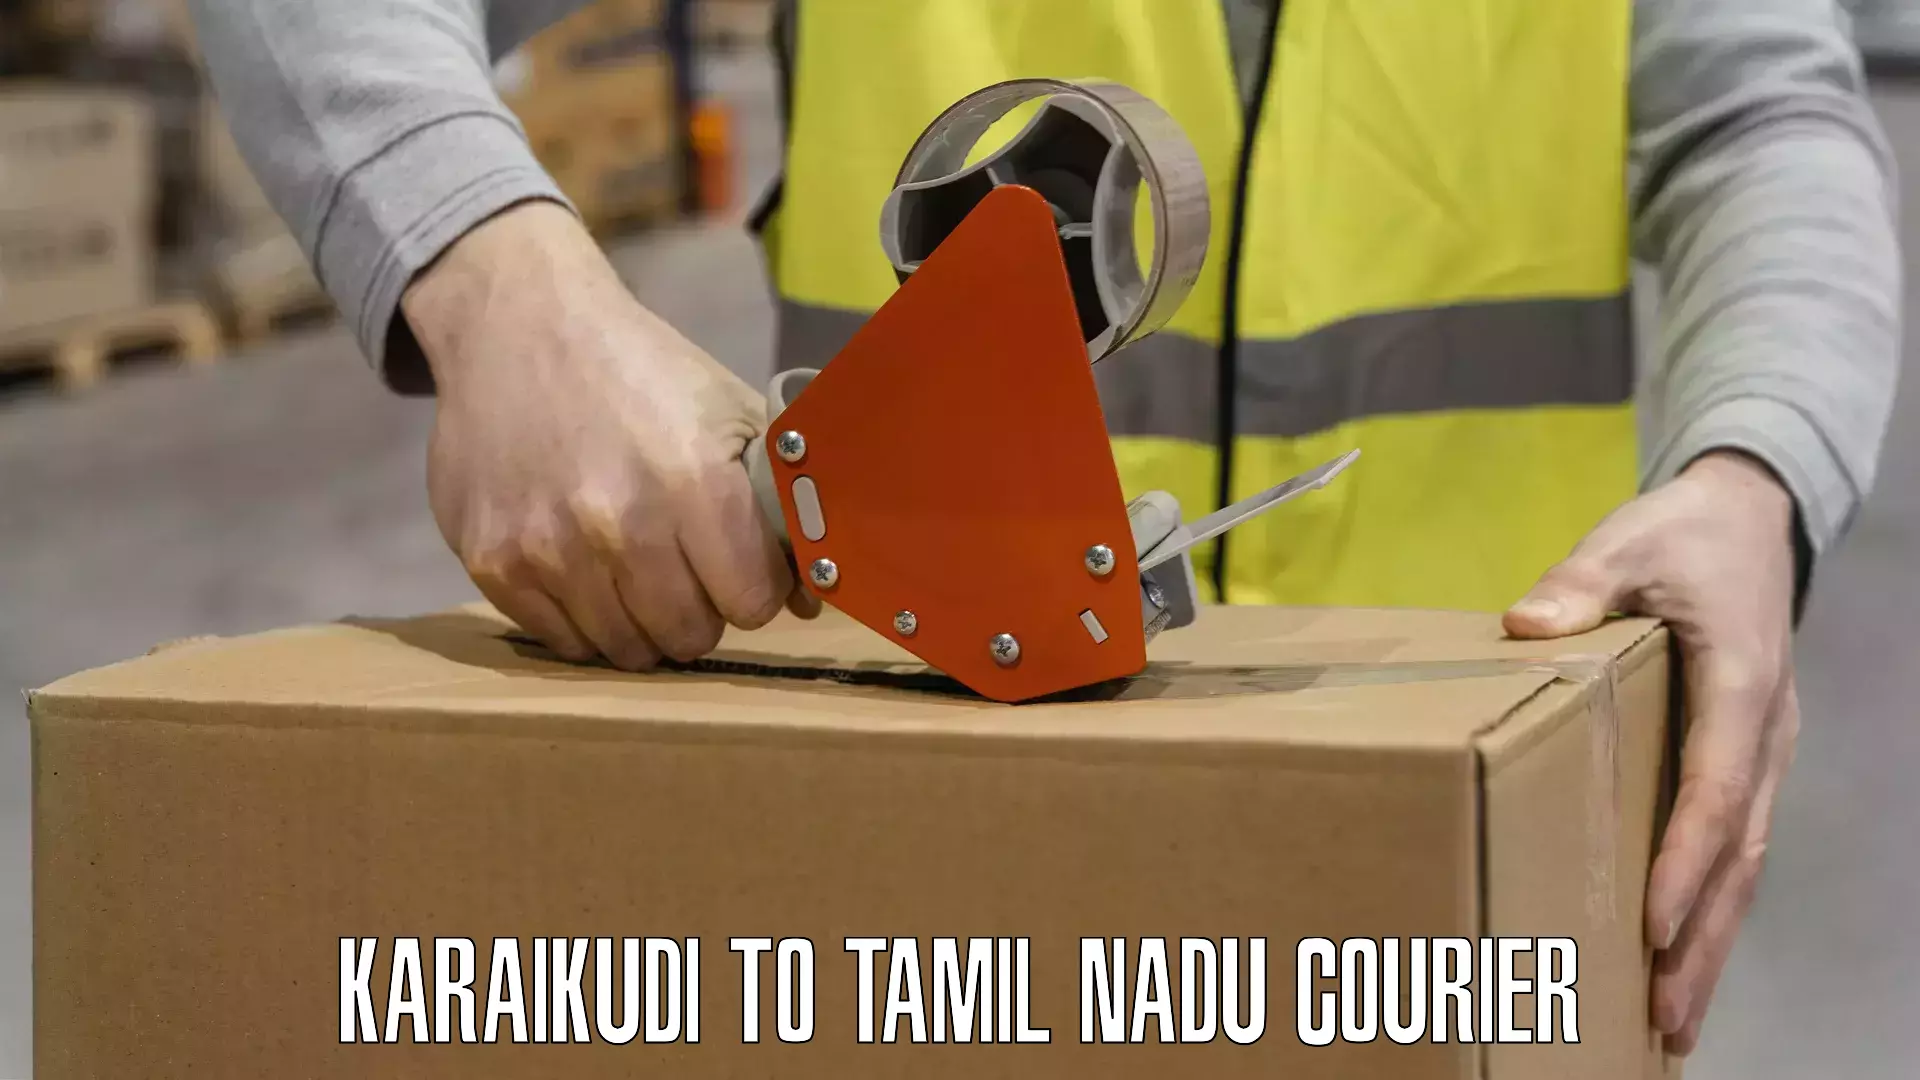 Urgent courier needs Karaikudi to Tamil Nadu